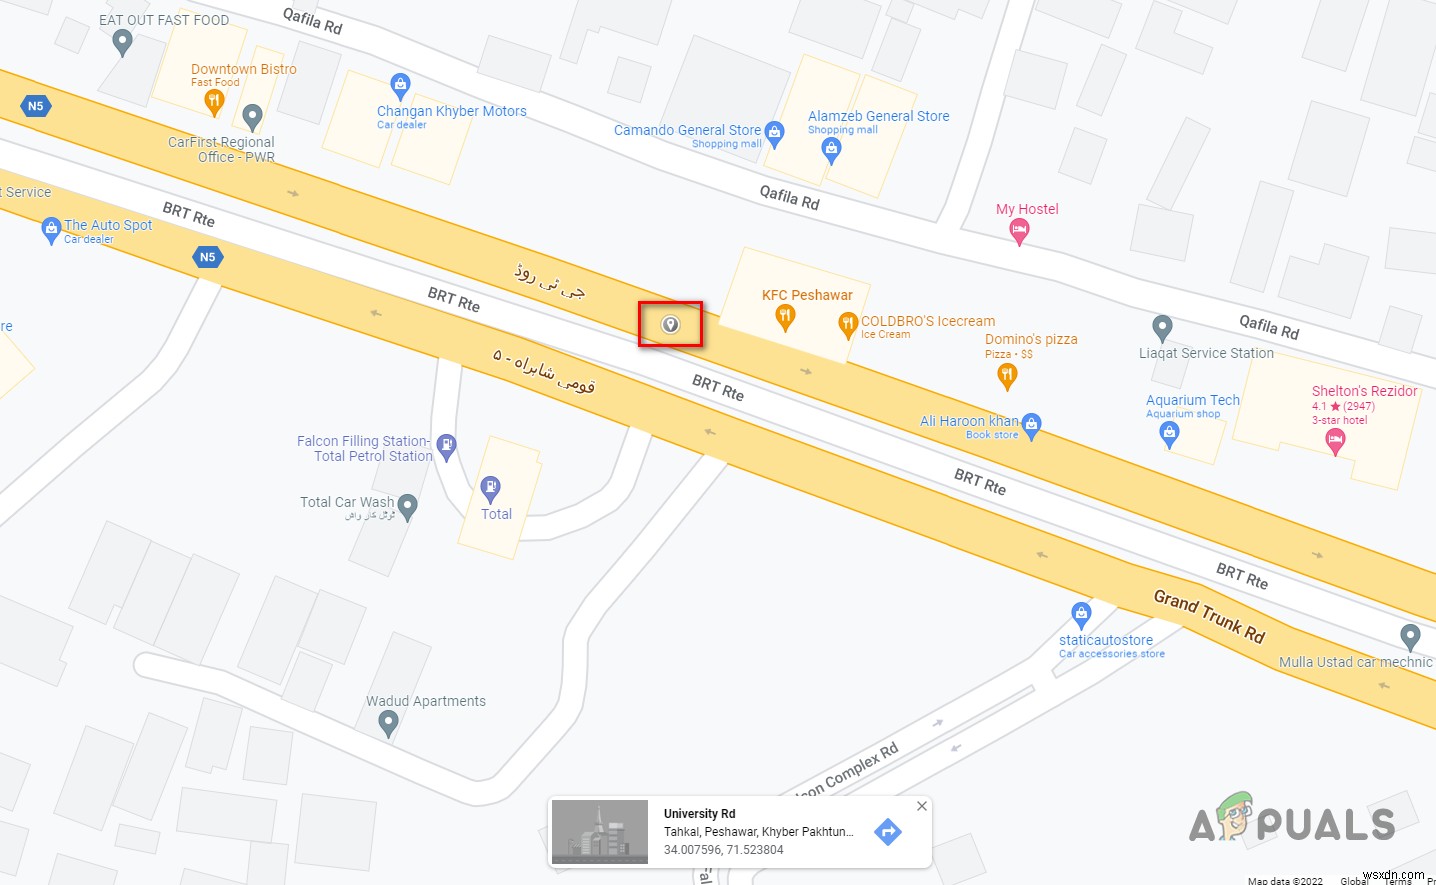 Google 지도에 핀을 고정하는 방법은 무엇입니까? 